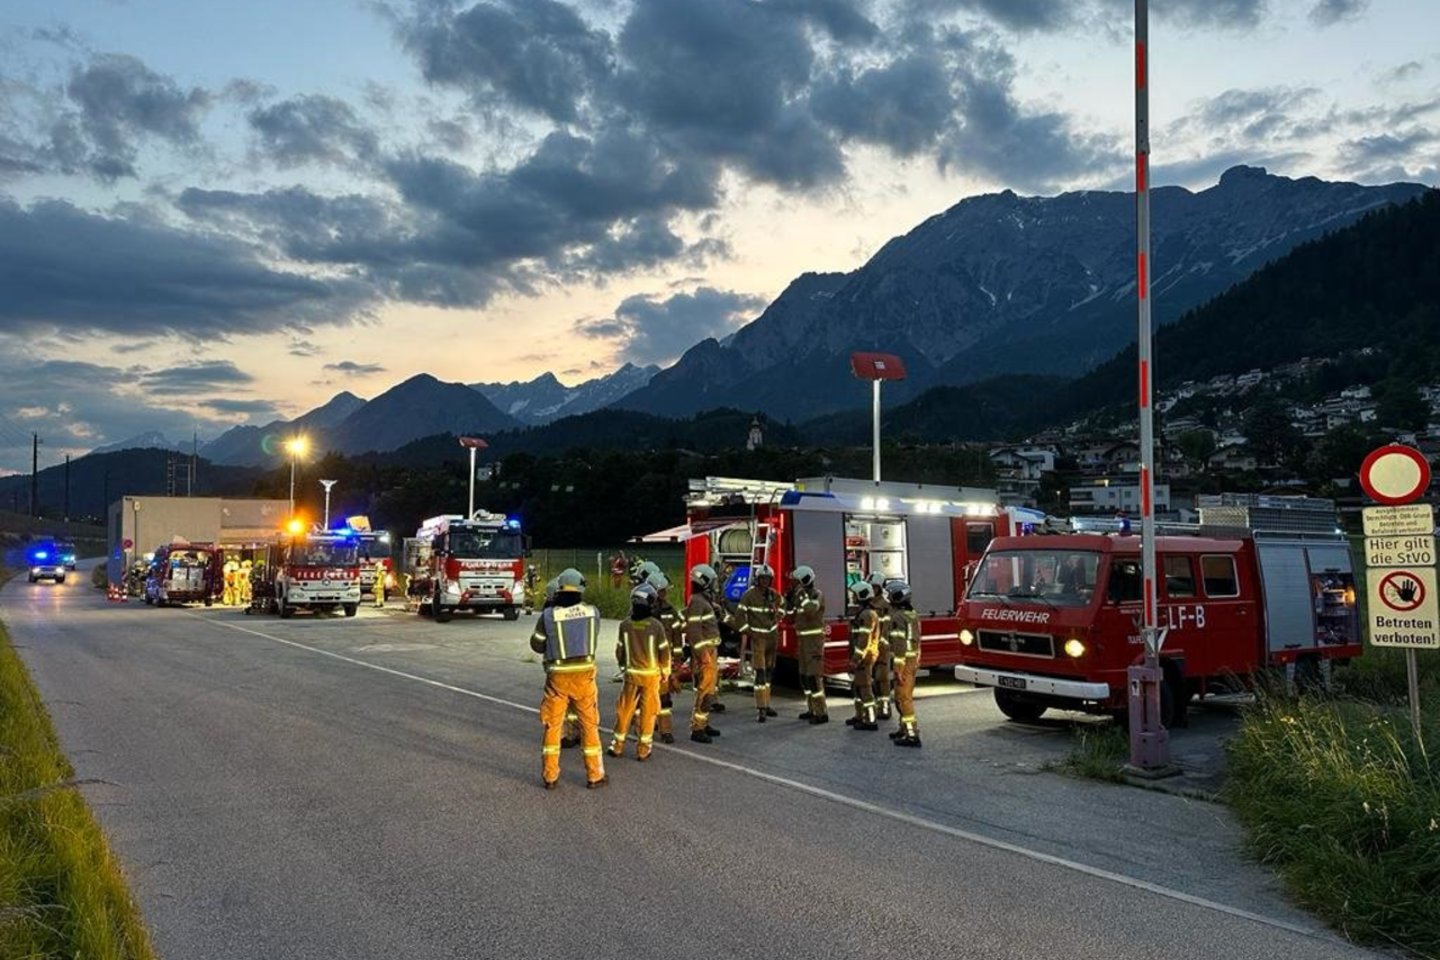 Daugiau nei 100 keleivių buvo išgelbėti iš tolimojo susisiekimo traukinio, užsiliepsnojusio tunelyje Austrijos Tirolio provincijoje. Tirolio valdžia pranešė, kad iš naktinio traukinio turėjo būti evakuotas 151 keleivis.<br>AFP/Scanpix nuotr.